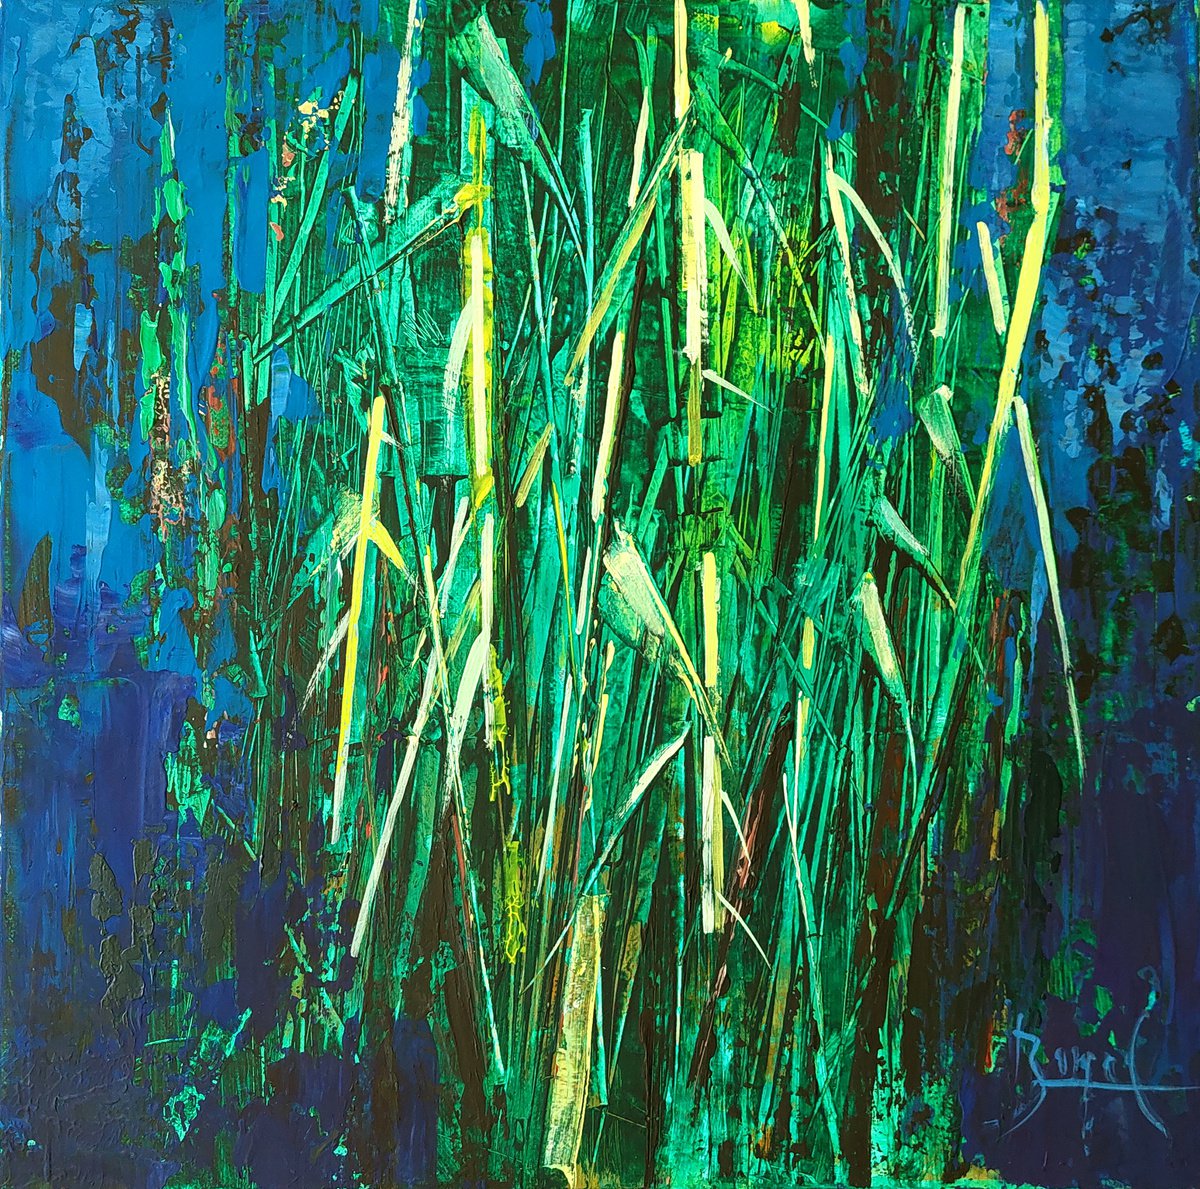 Green Reed by Ovidiu Buzec